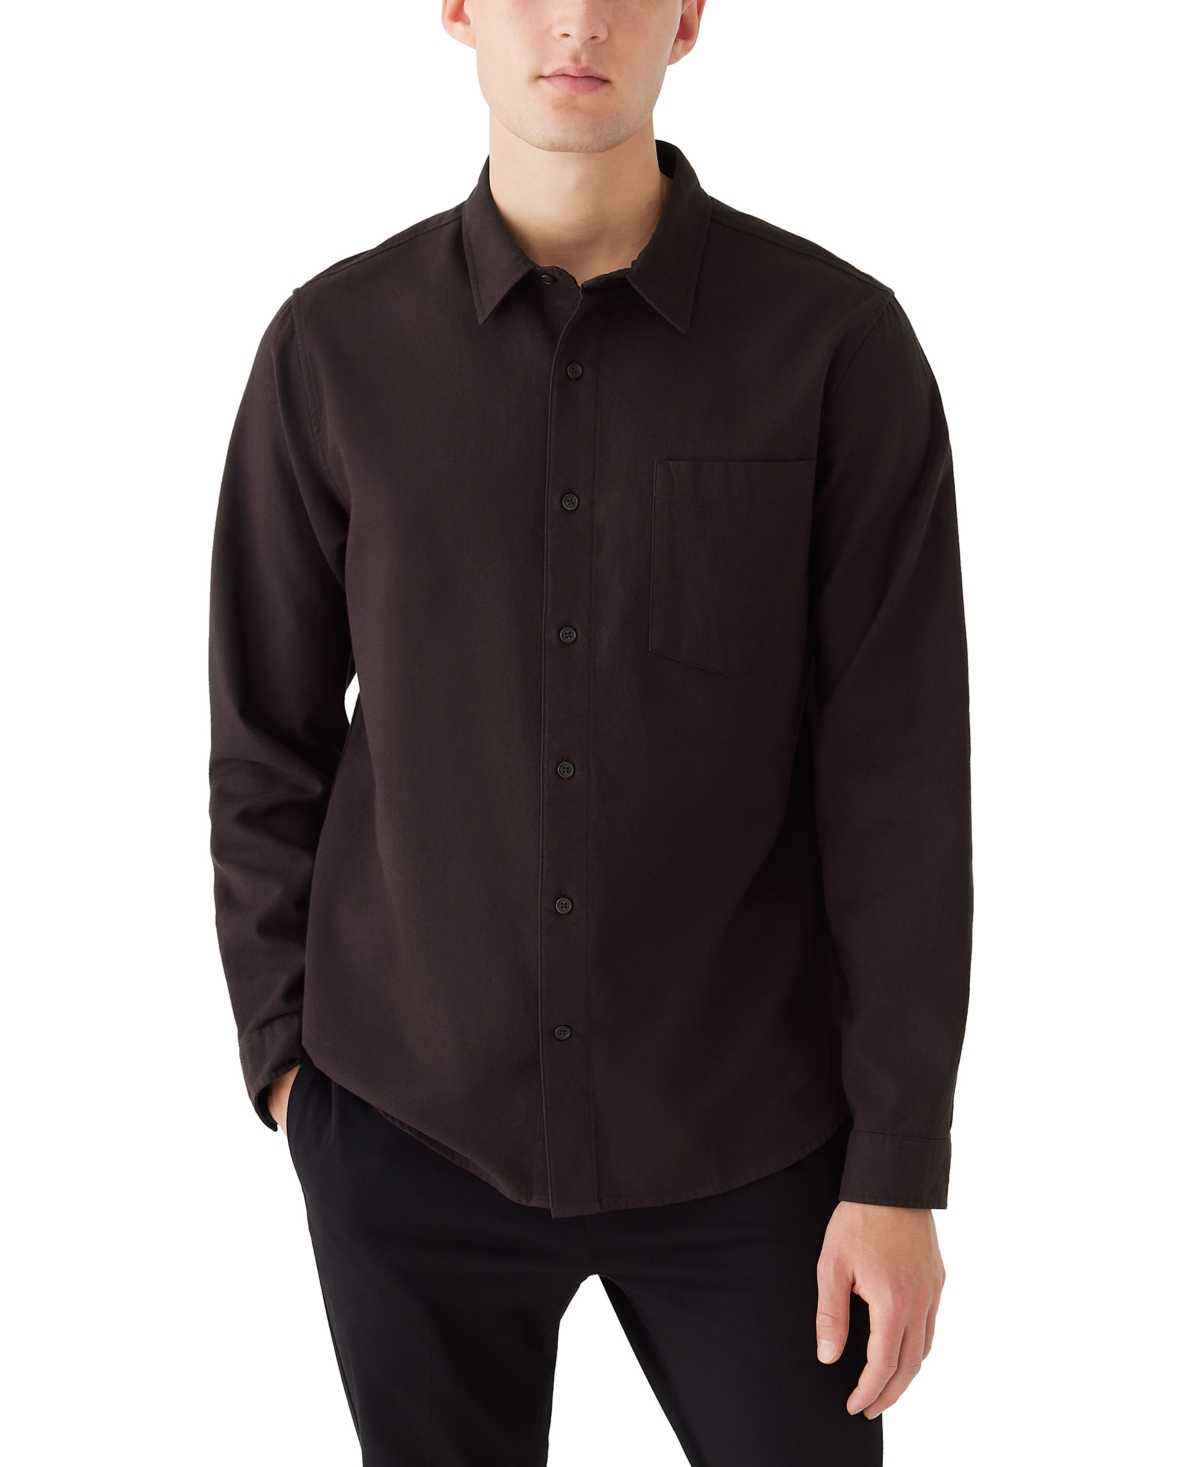 Men's Solid-Color Flannel Button Shirt - Black Bean